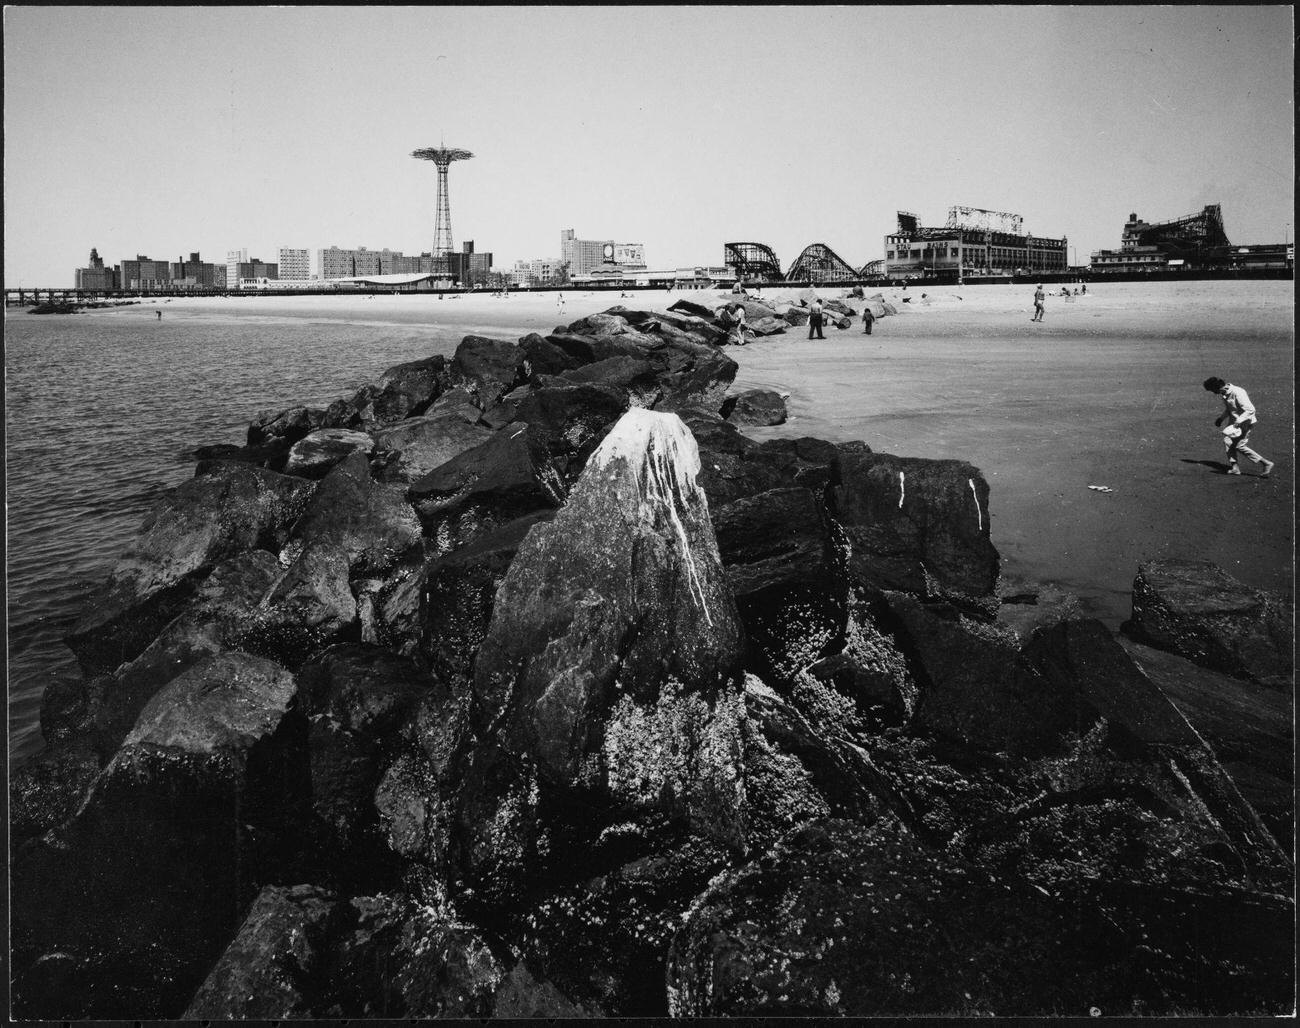 Beach And Boardwalk At Coney Island, Brooklyn, 1975.